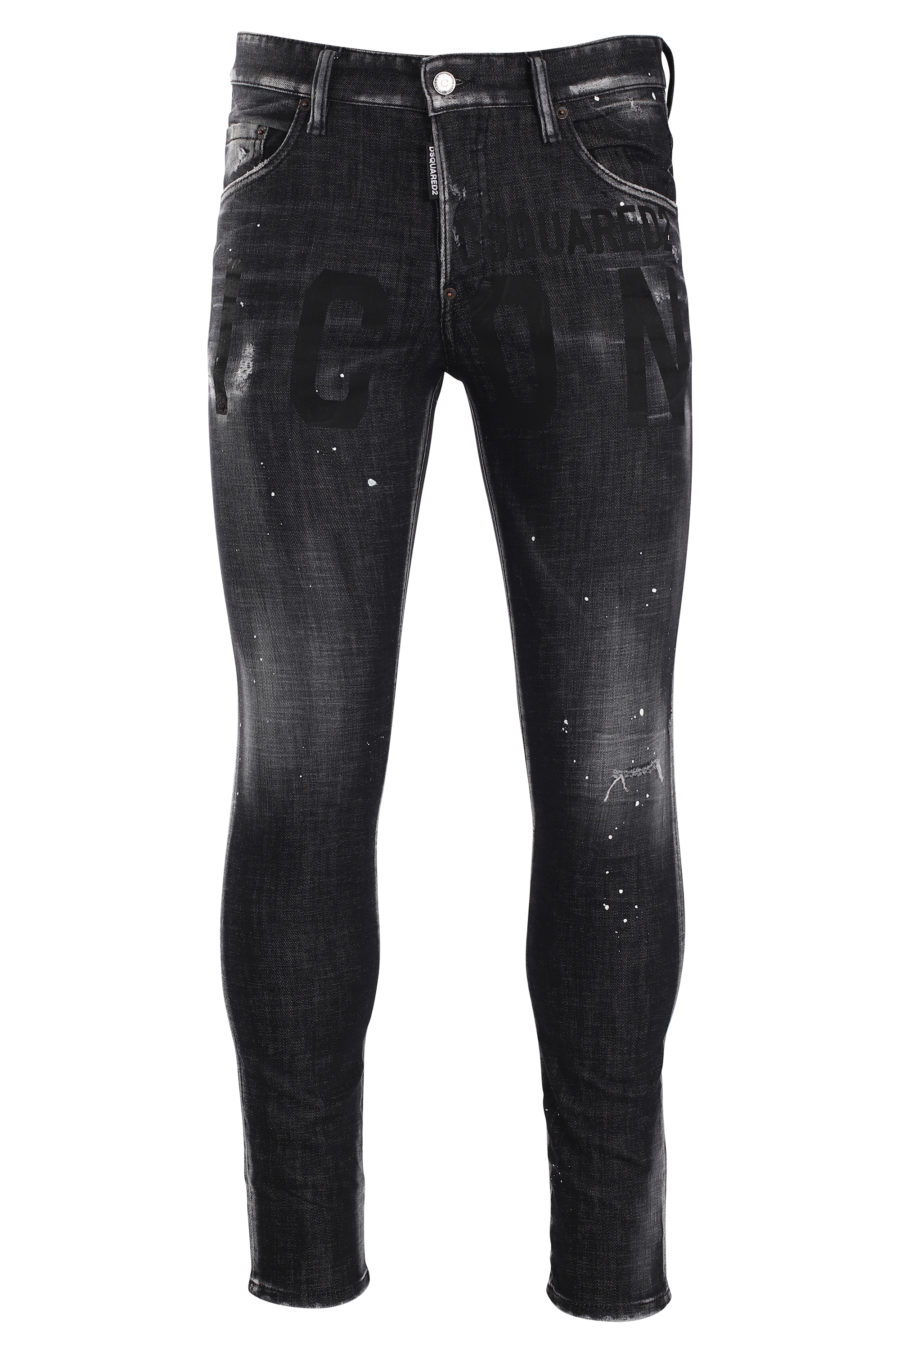 Icon Skater-Jeans schwarz getragen - IMG 9969